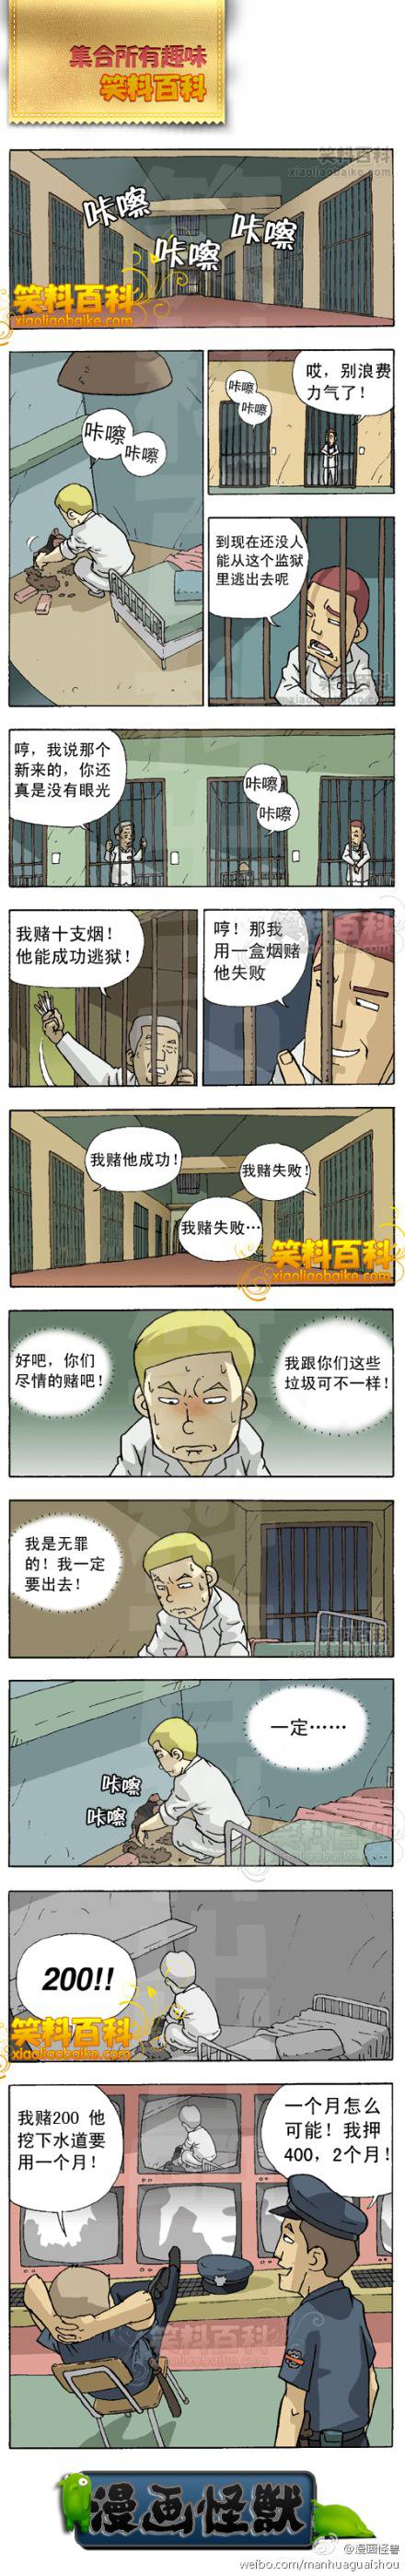 邪恶漫画爆笑囧图第28刊：美女服务